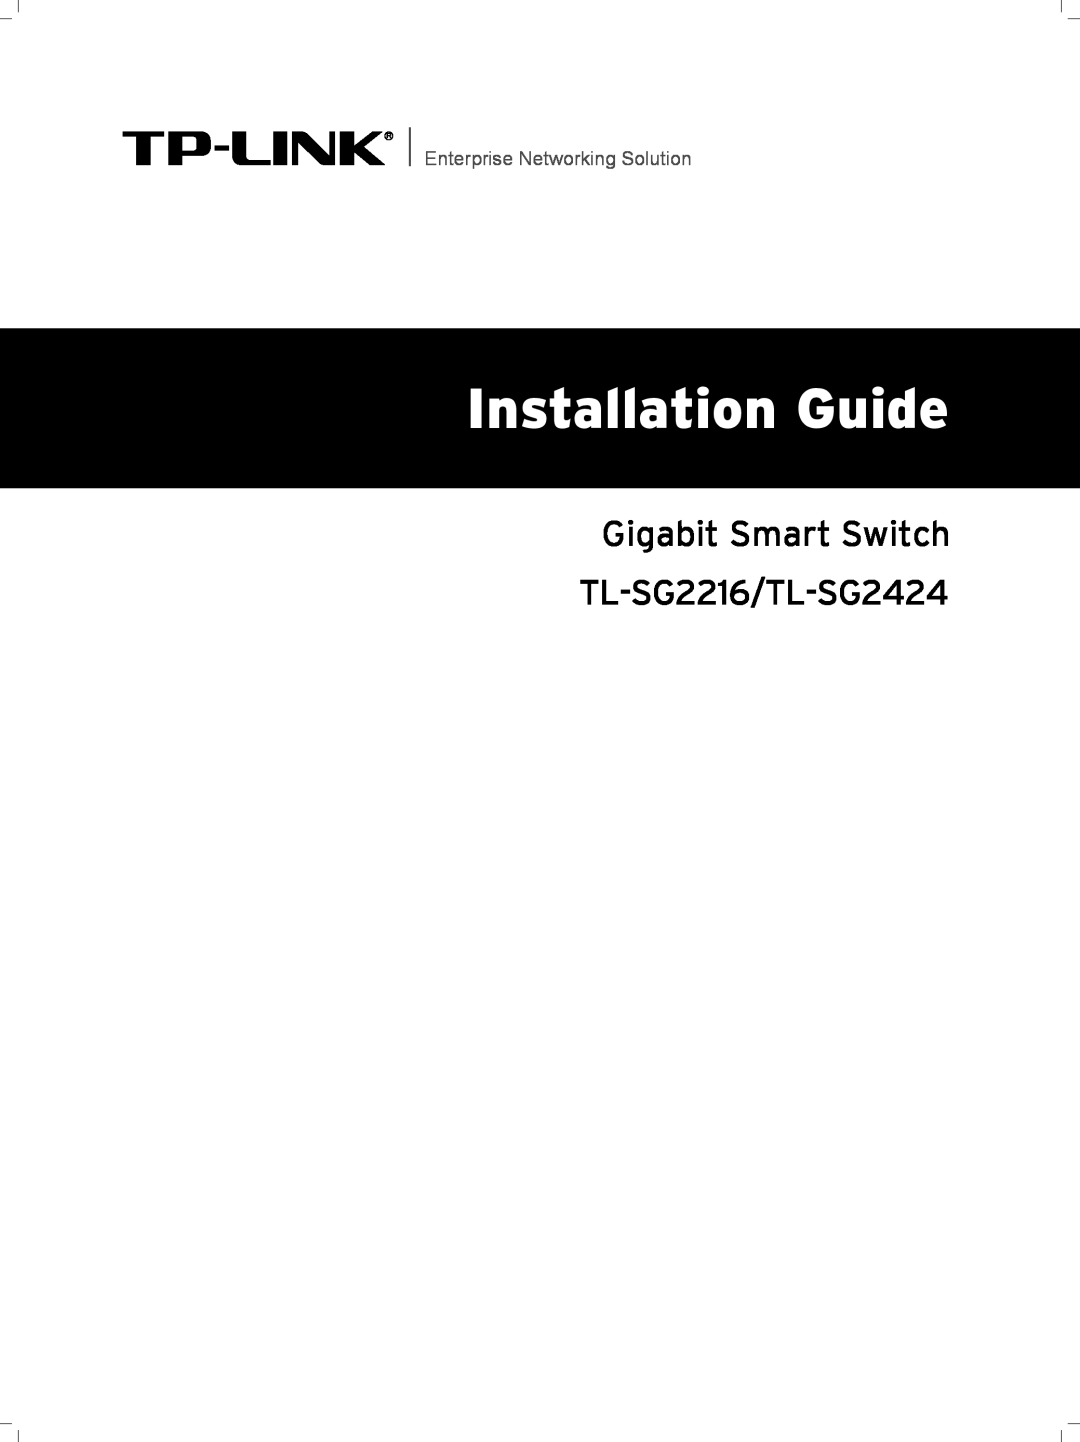 TP-Link manual Installation Guide, Gigabit Smart Switch TL-SG2216/TL-SG2424, Enterprise Networking Solution 